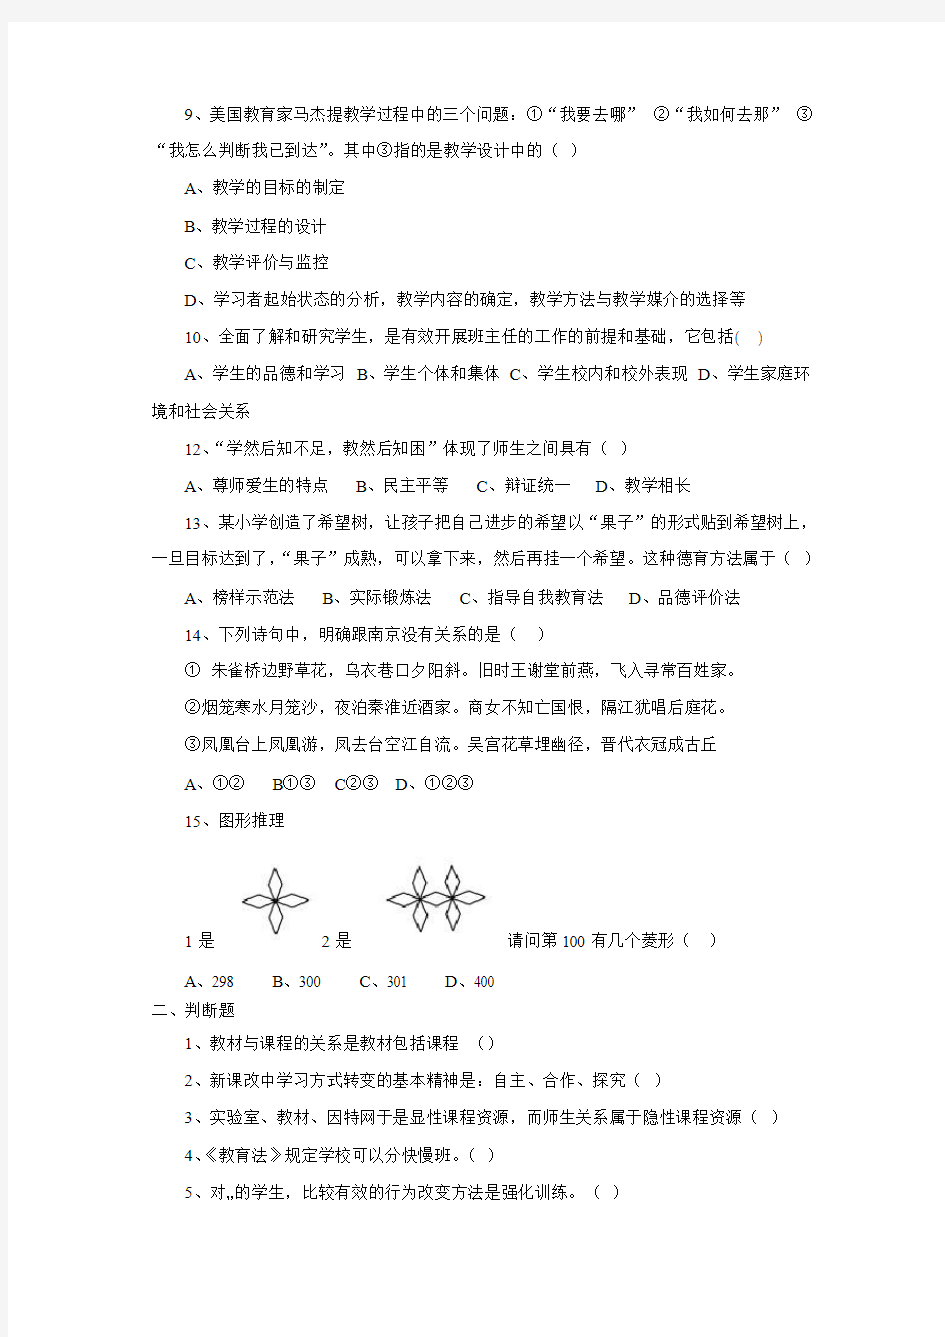 南京市2011年招聘新教师考试公共基础知识考题解析